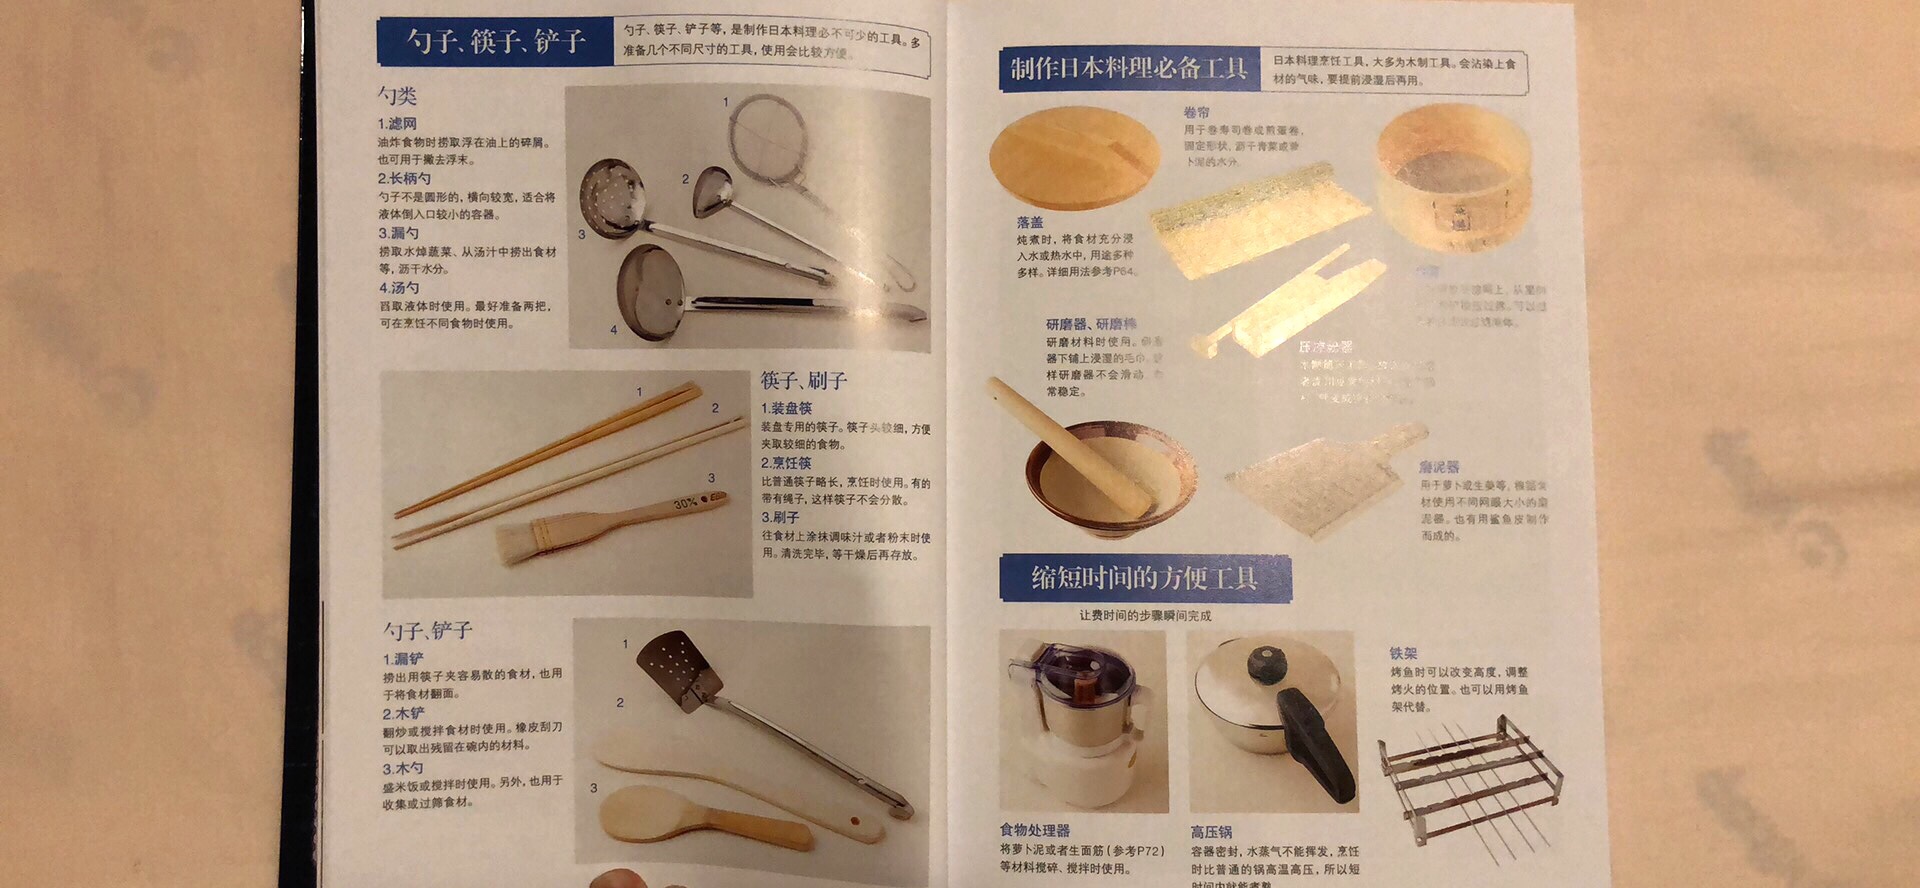 不得不说，日本人写的菜谱真的是够细致的，咱从西式、中式到日式，各种菜谱都买了一份，这份写的最详细，从食材、刀工、做法、摆盘到锅的保养，面面俱到。可惜有些食材买不到，先把中餐搞定再说，其它的以后有空慢慢研究。